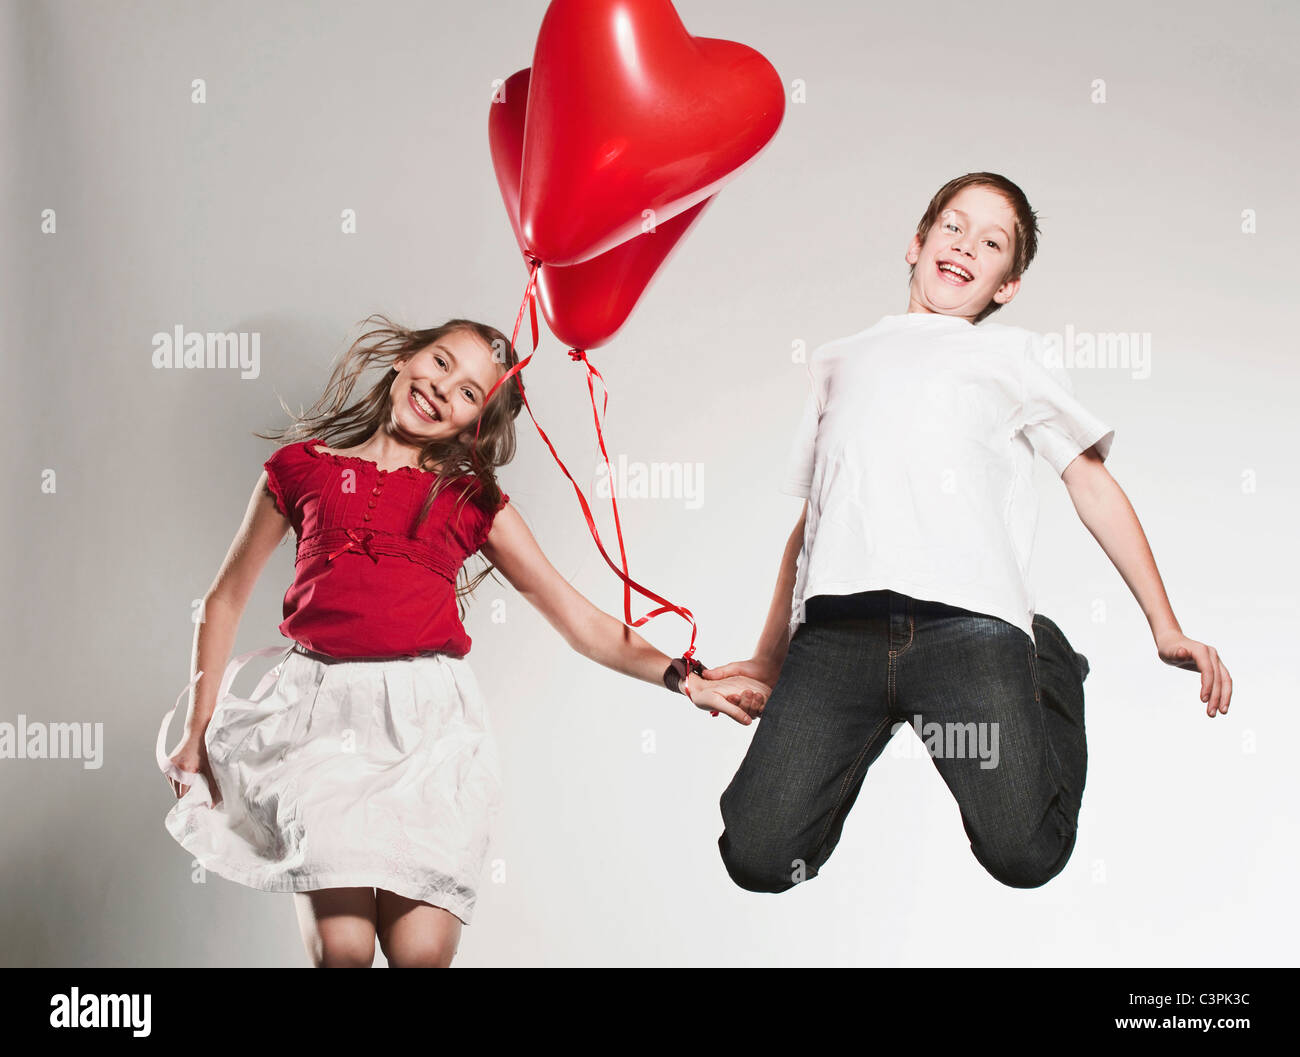 Kinder (10-13) Ballons halten und springen, Lächeln, Porträt Stockfoto